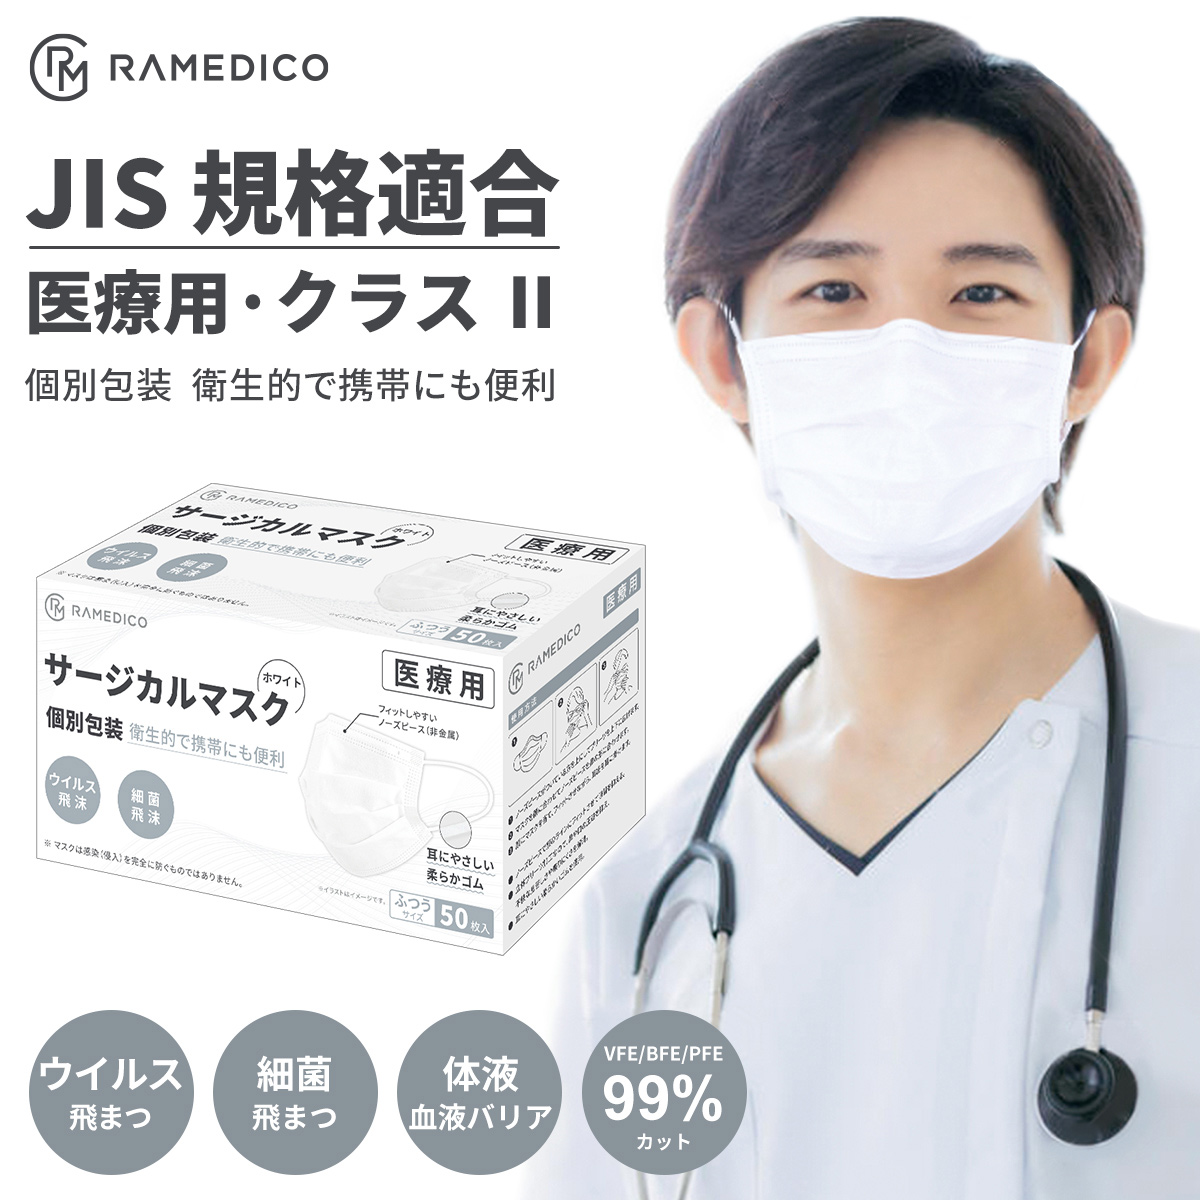 サージカルマスク 医療用 マスク JIS T9001 クラスII 個包装 ふつうサイズ WHITE 白 日本産業規格適合